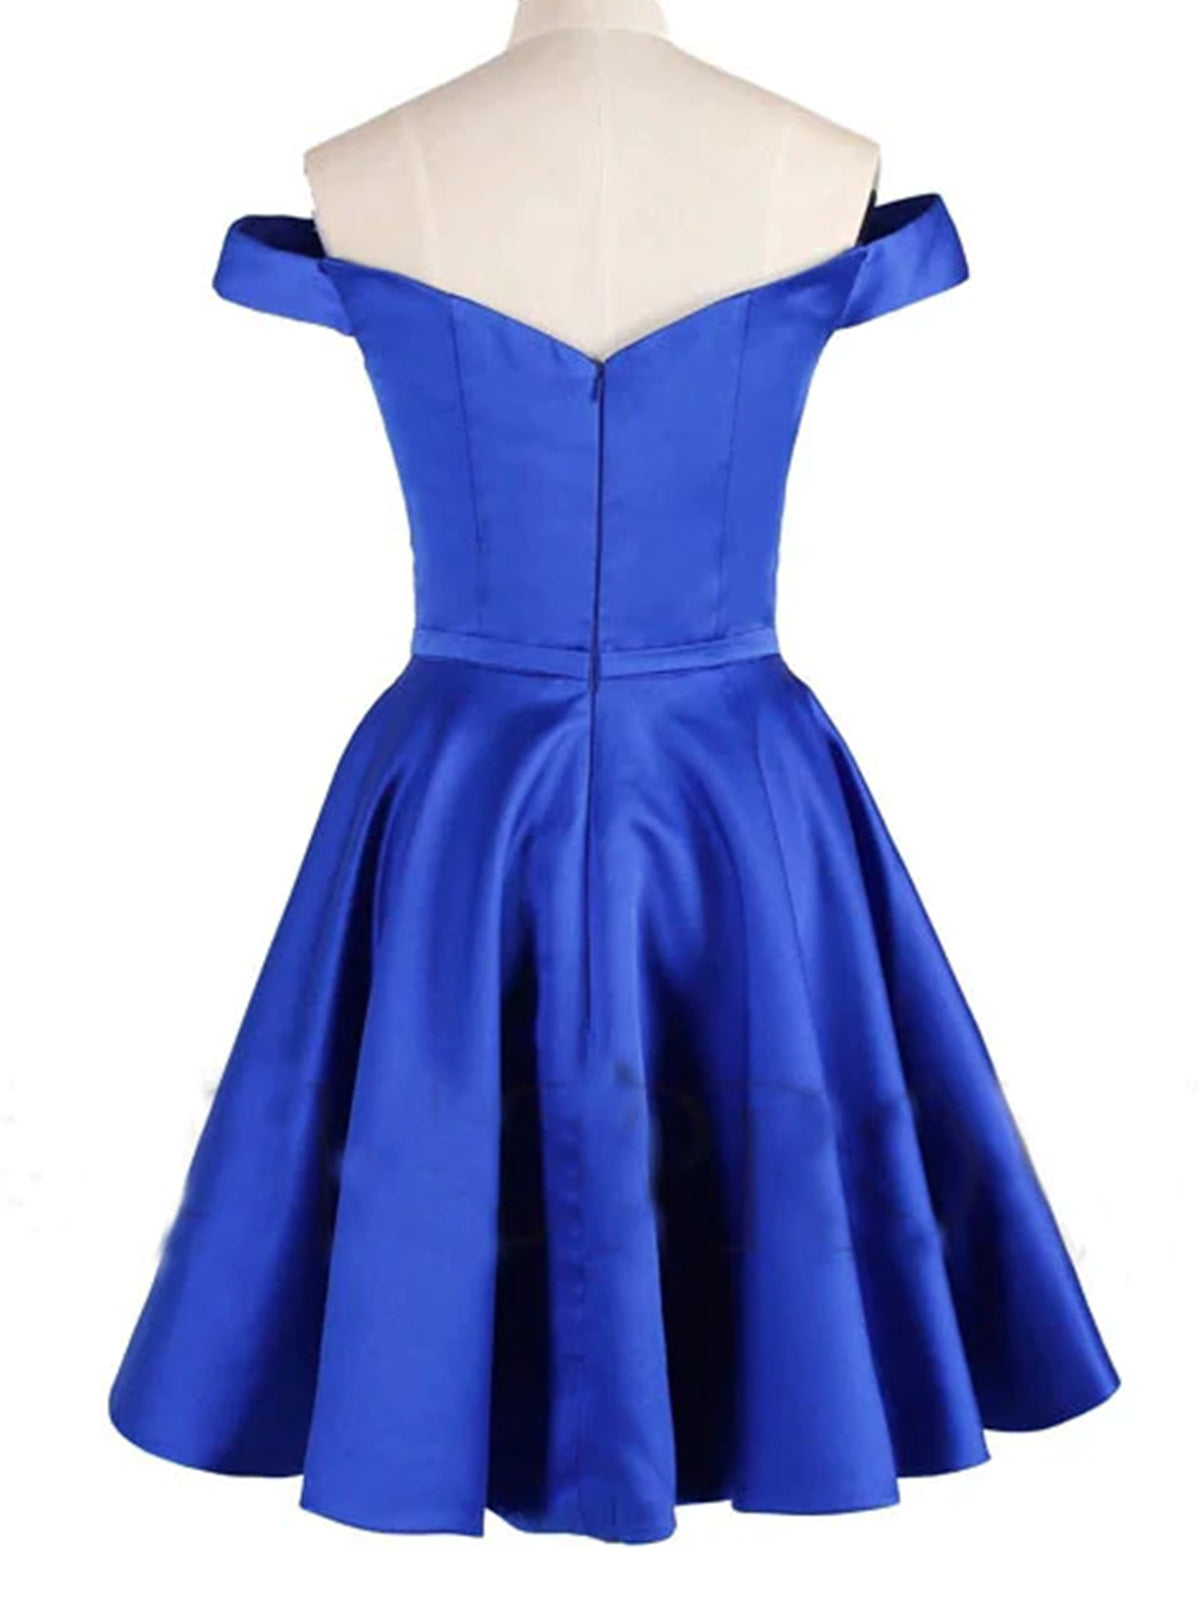 Off Shoulder Blue Satin Short Prom Dresses, Short Blue Homecoming Dresses, Blue Formal Evening Dresses 